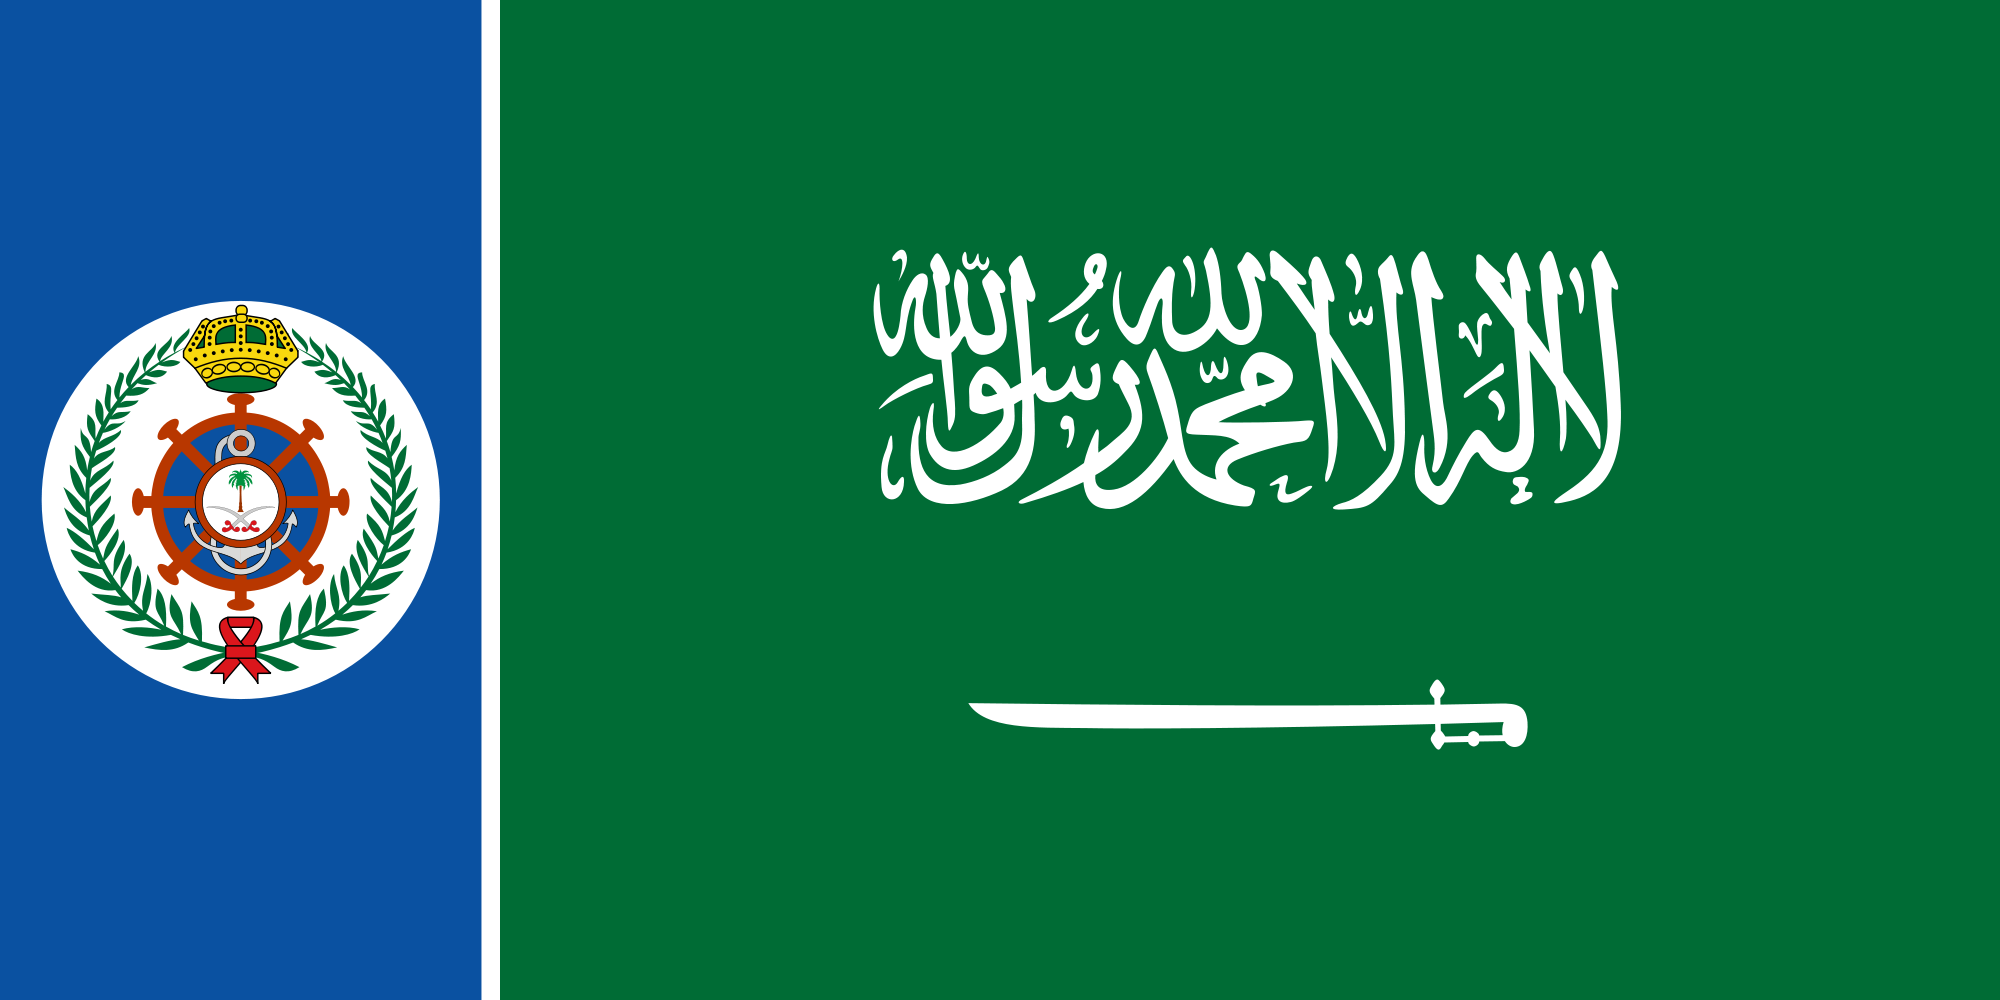 Saudi Arabia (Naval ensign)